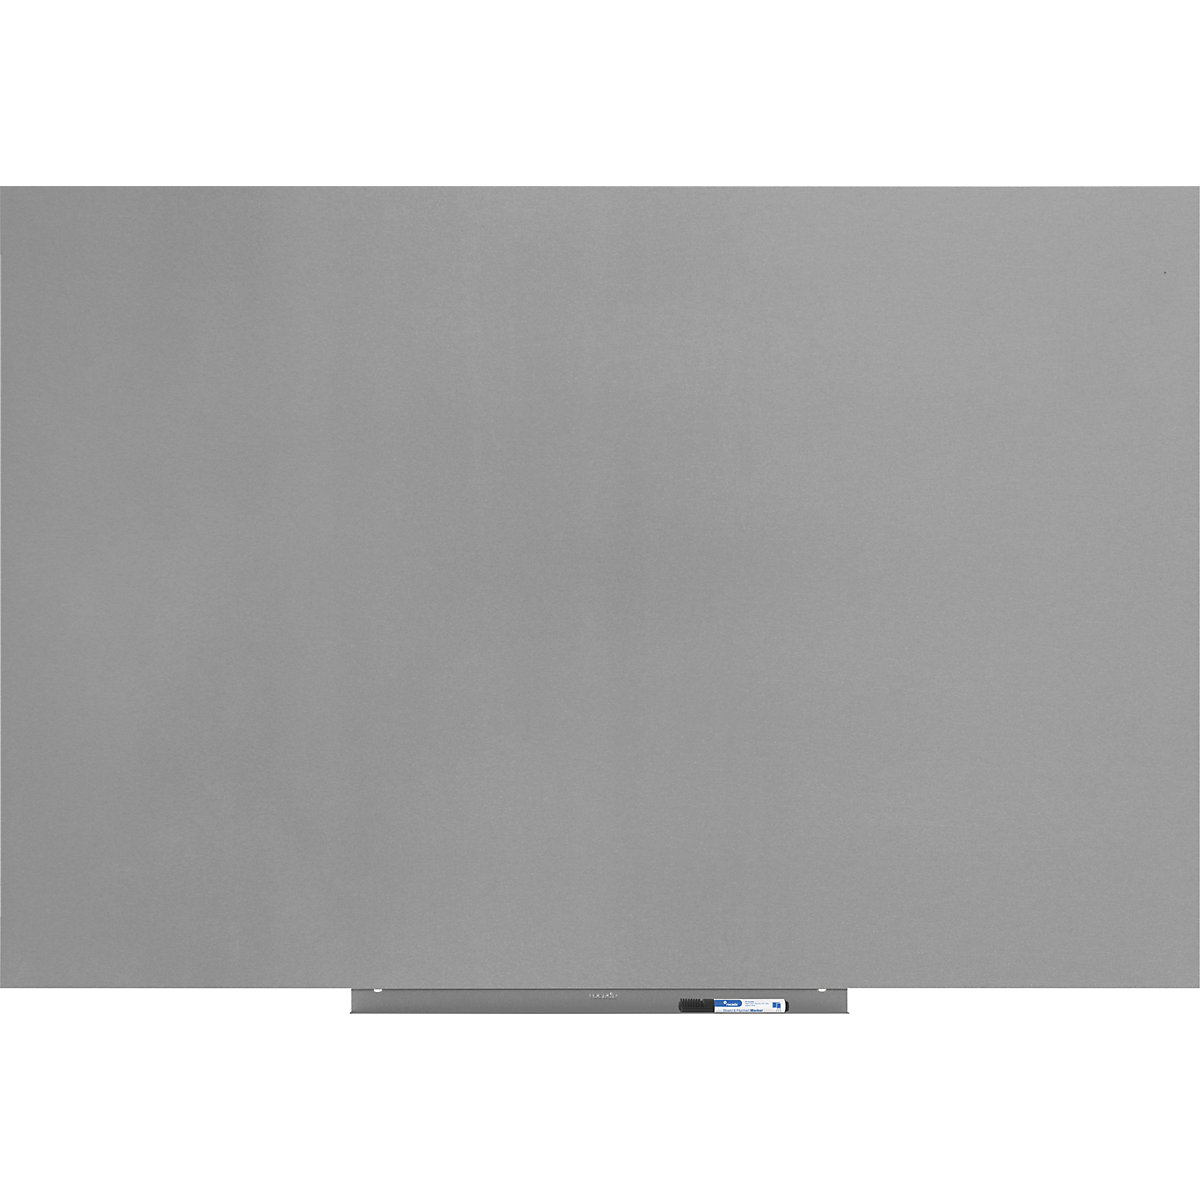 Whiteboardmodule, PRO-versie – plaatstaal, gecoat, b x h = 1000 x 1500 mm, zilver-17